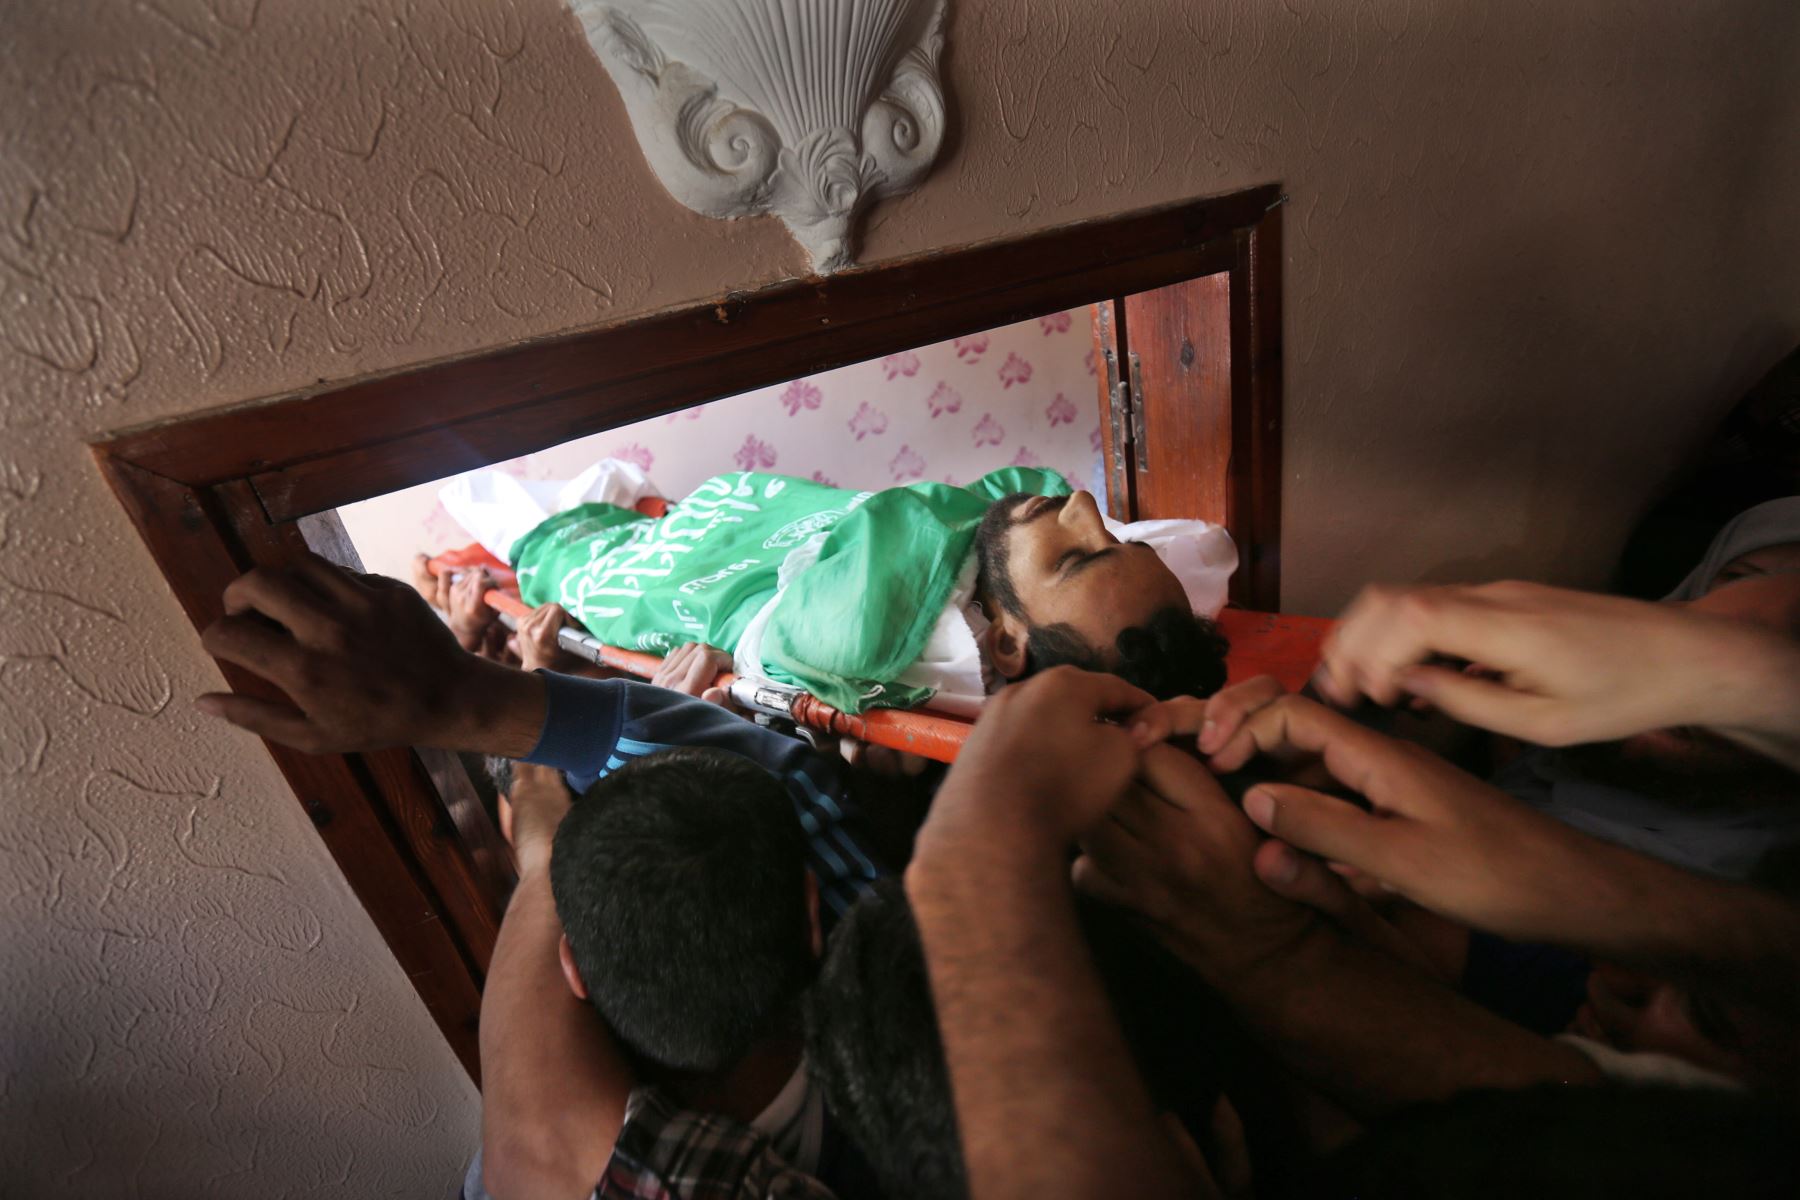 Los deudos llevan el cuerpo de Mohammed Dwedar, un palestino de 27 años muerto durante los enfrentamientos a lo largo de la frontera de Gaza el día anterior. AFP